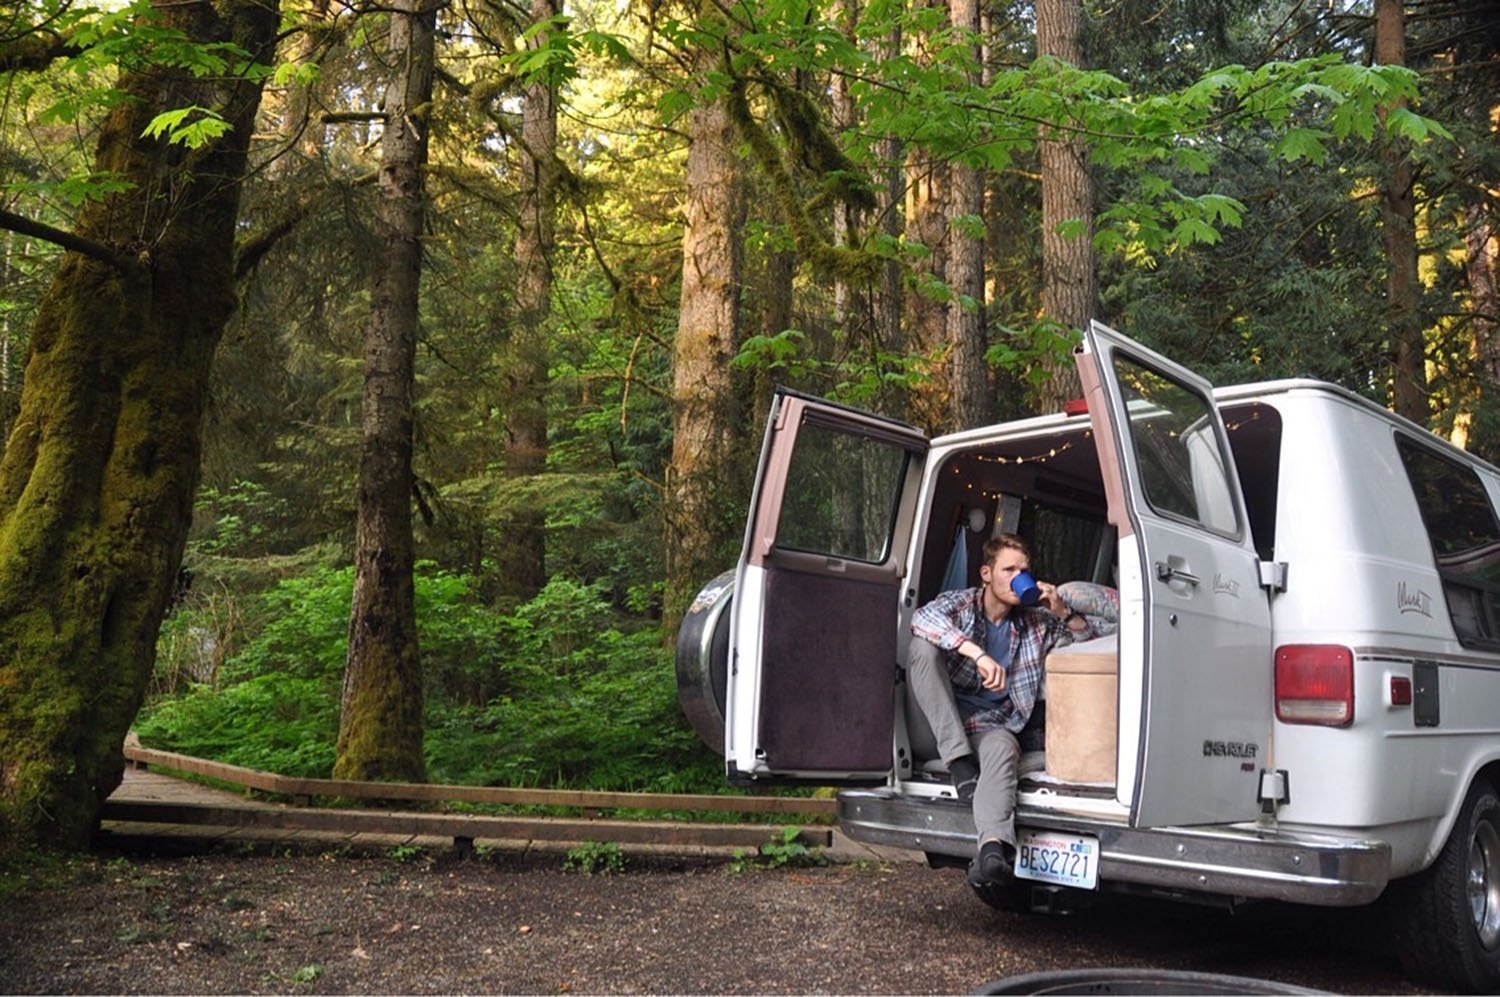 《Van Life Q&A Van in Woods